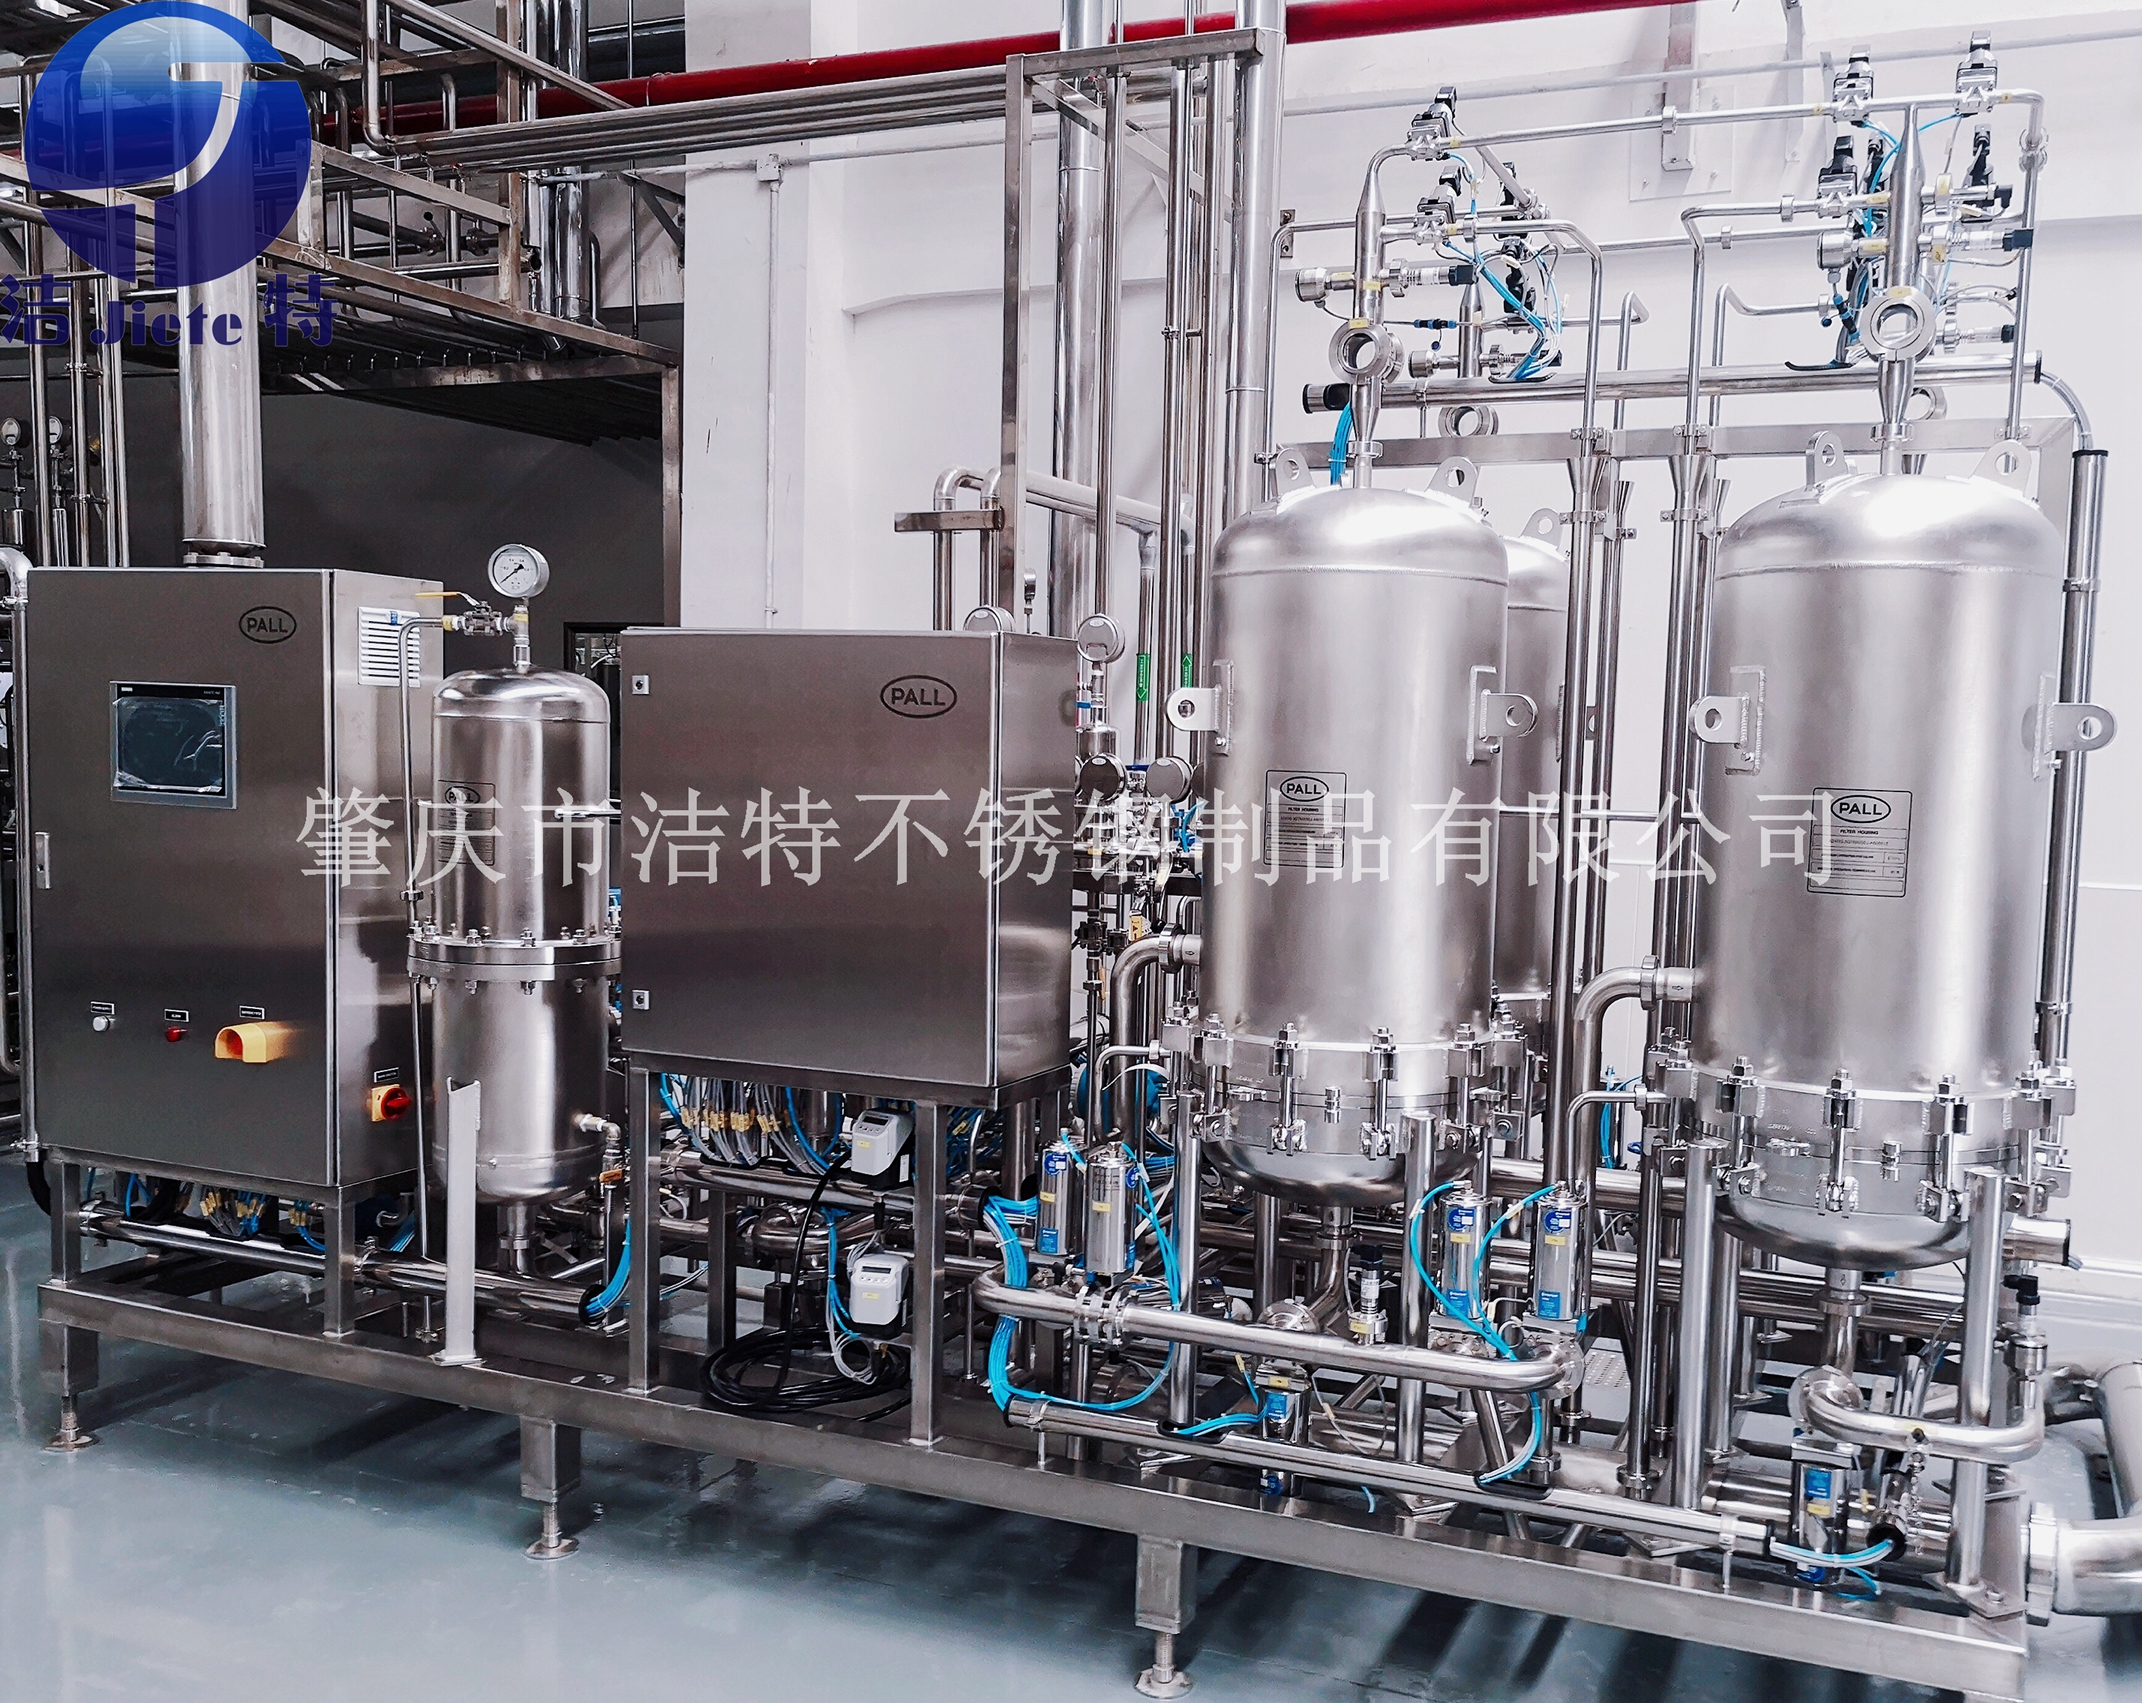 不锈钢常压容器_提供储罐-肇庆市高要区洁特不锈钢制品有限公司